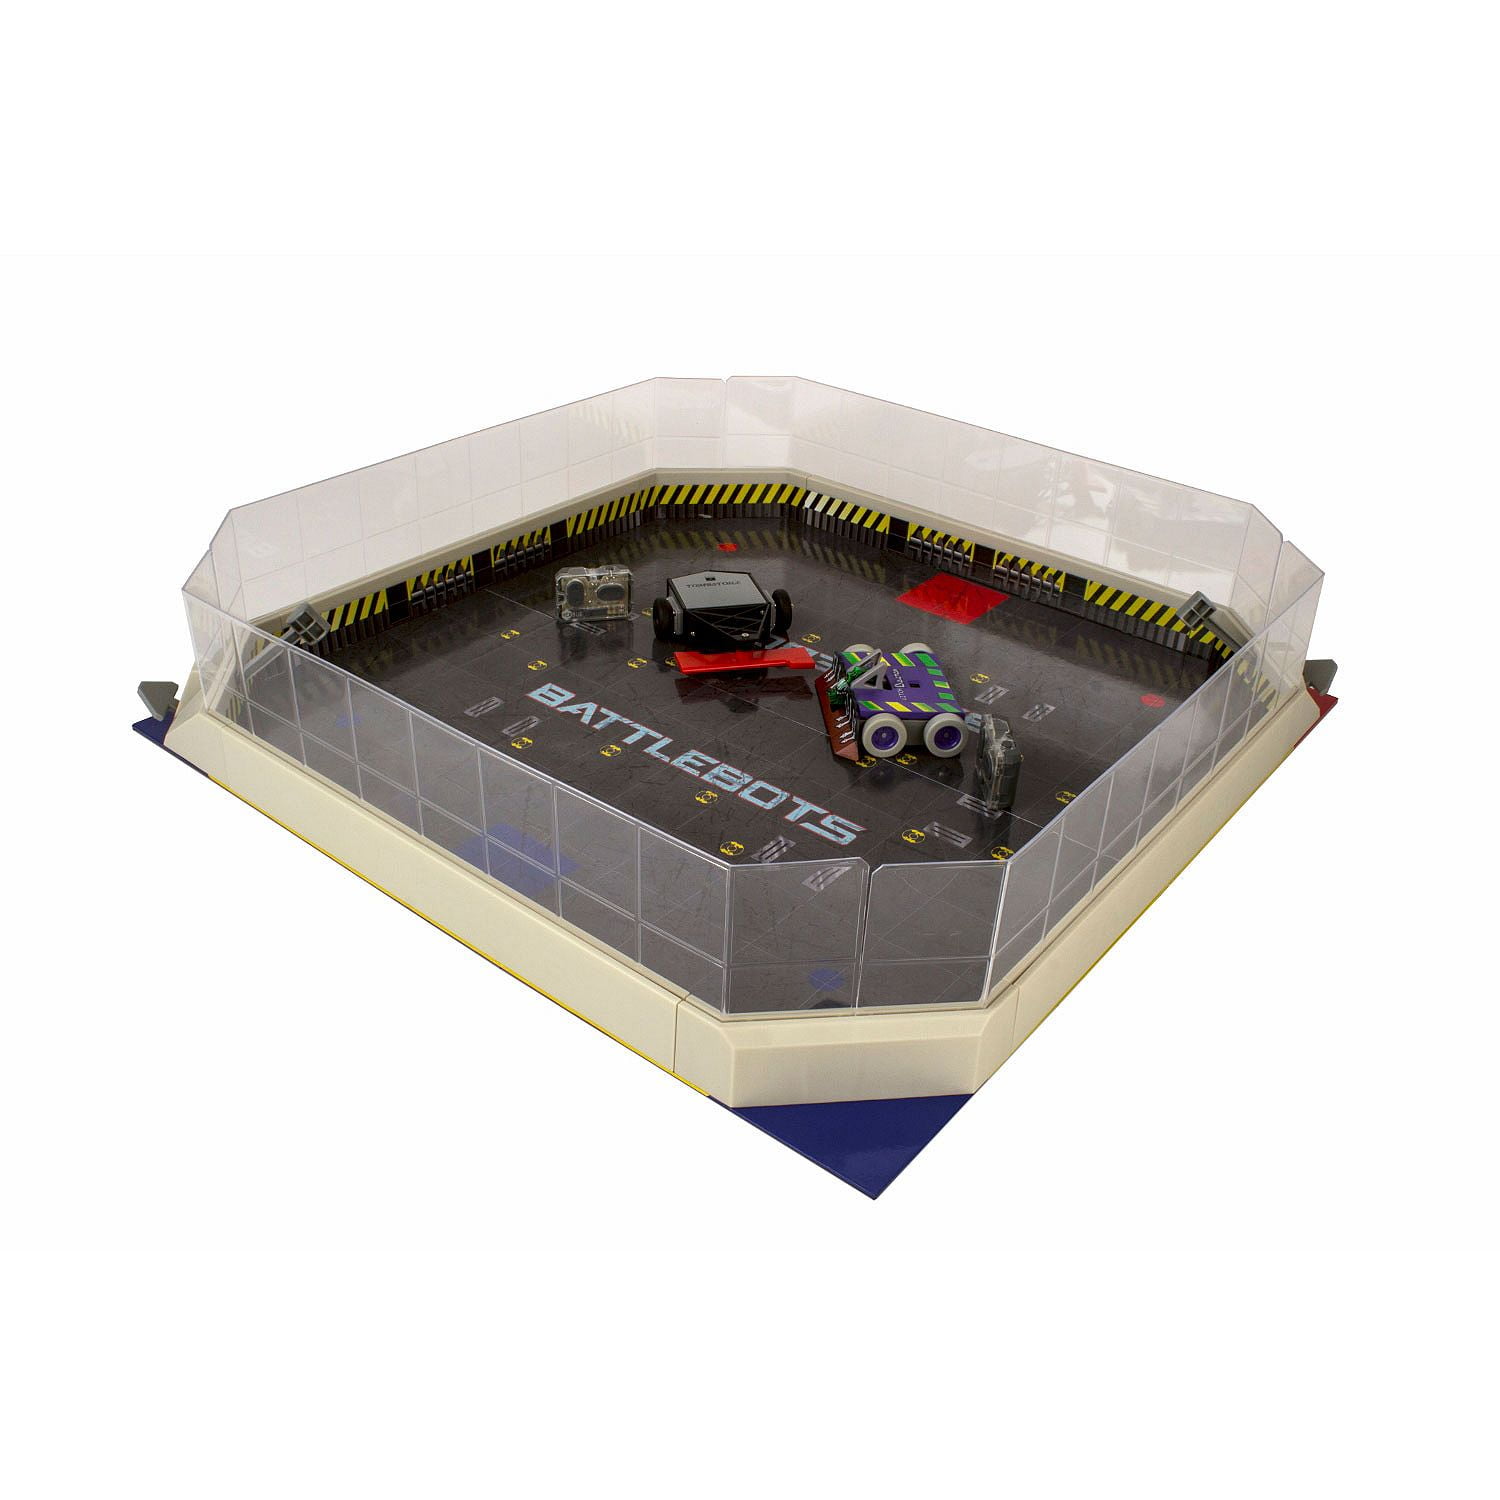 HEXBUG Battlebots Battlebox Arena FX 4136395 for sale online Blue / Red 